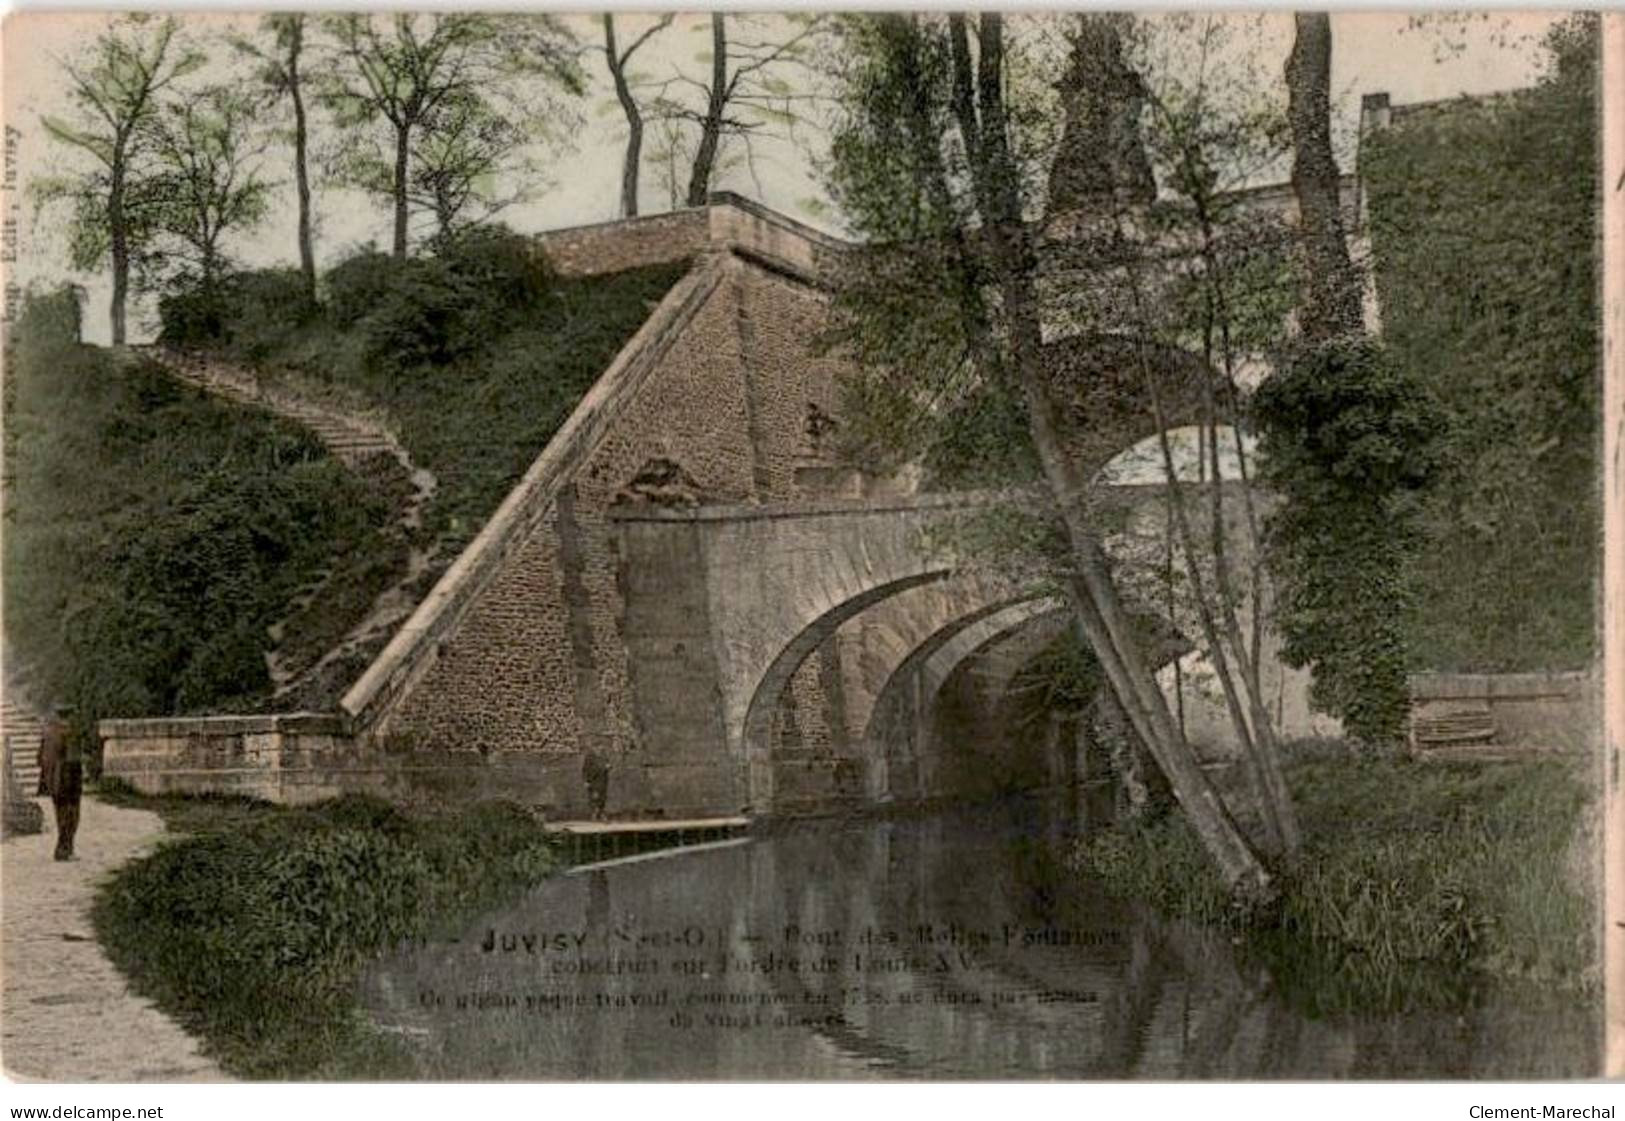 JUVISY-sur-ORGE: Pont Des Belles-fontaines - Très Bon état - Juvisy-sur-Orge